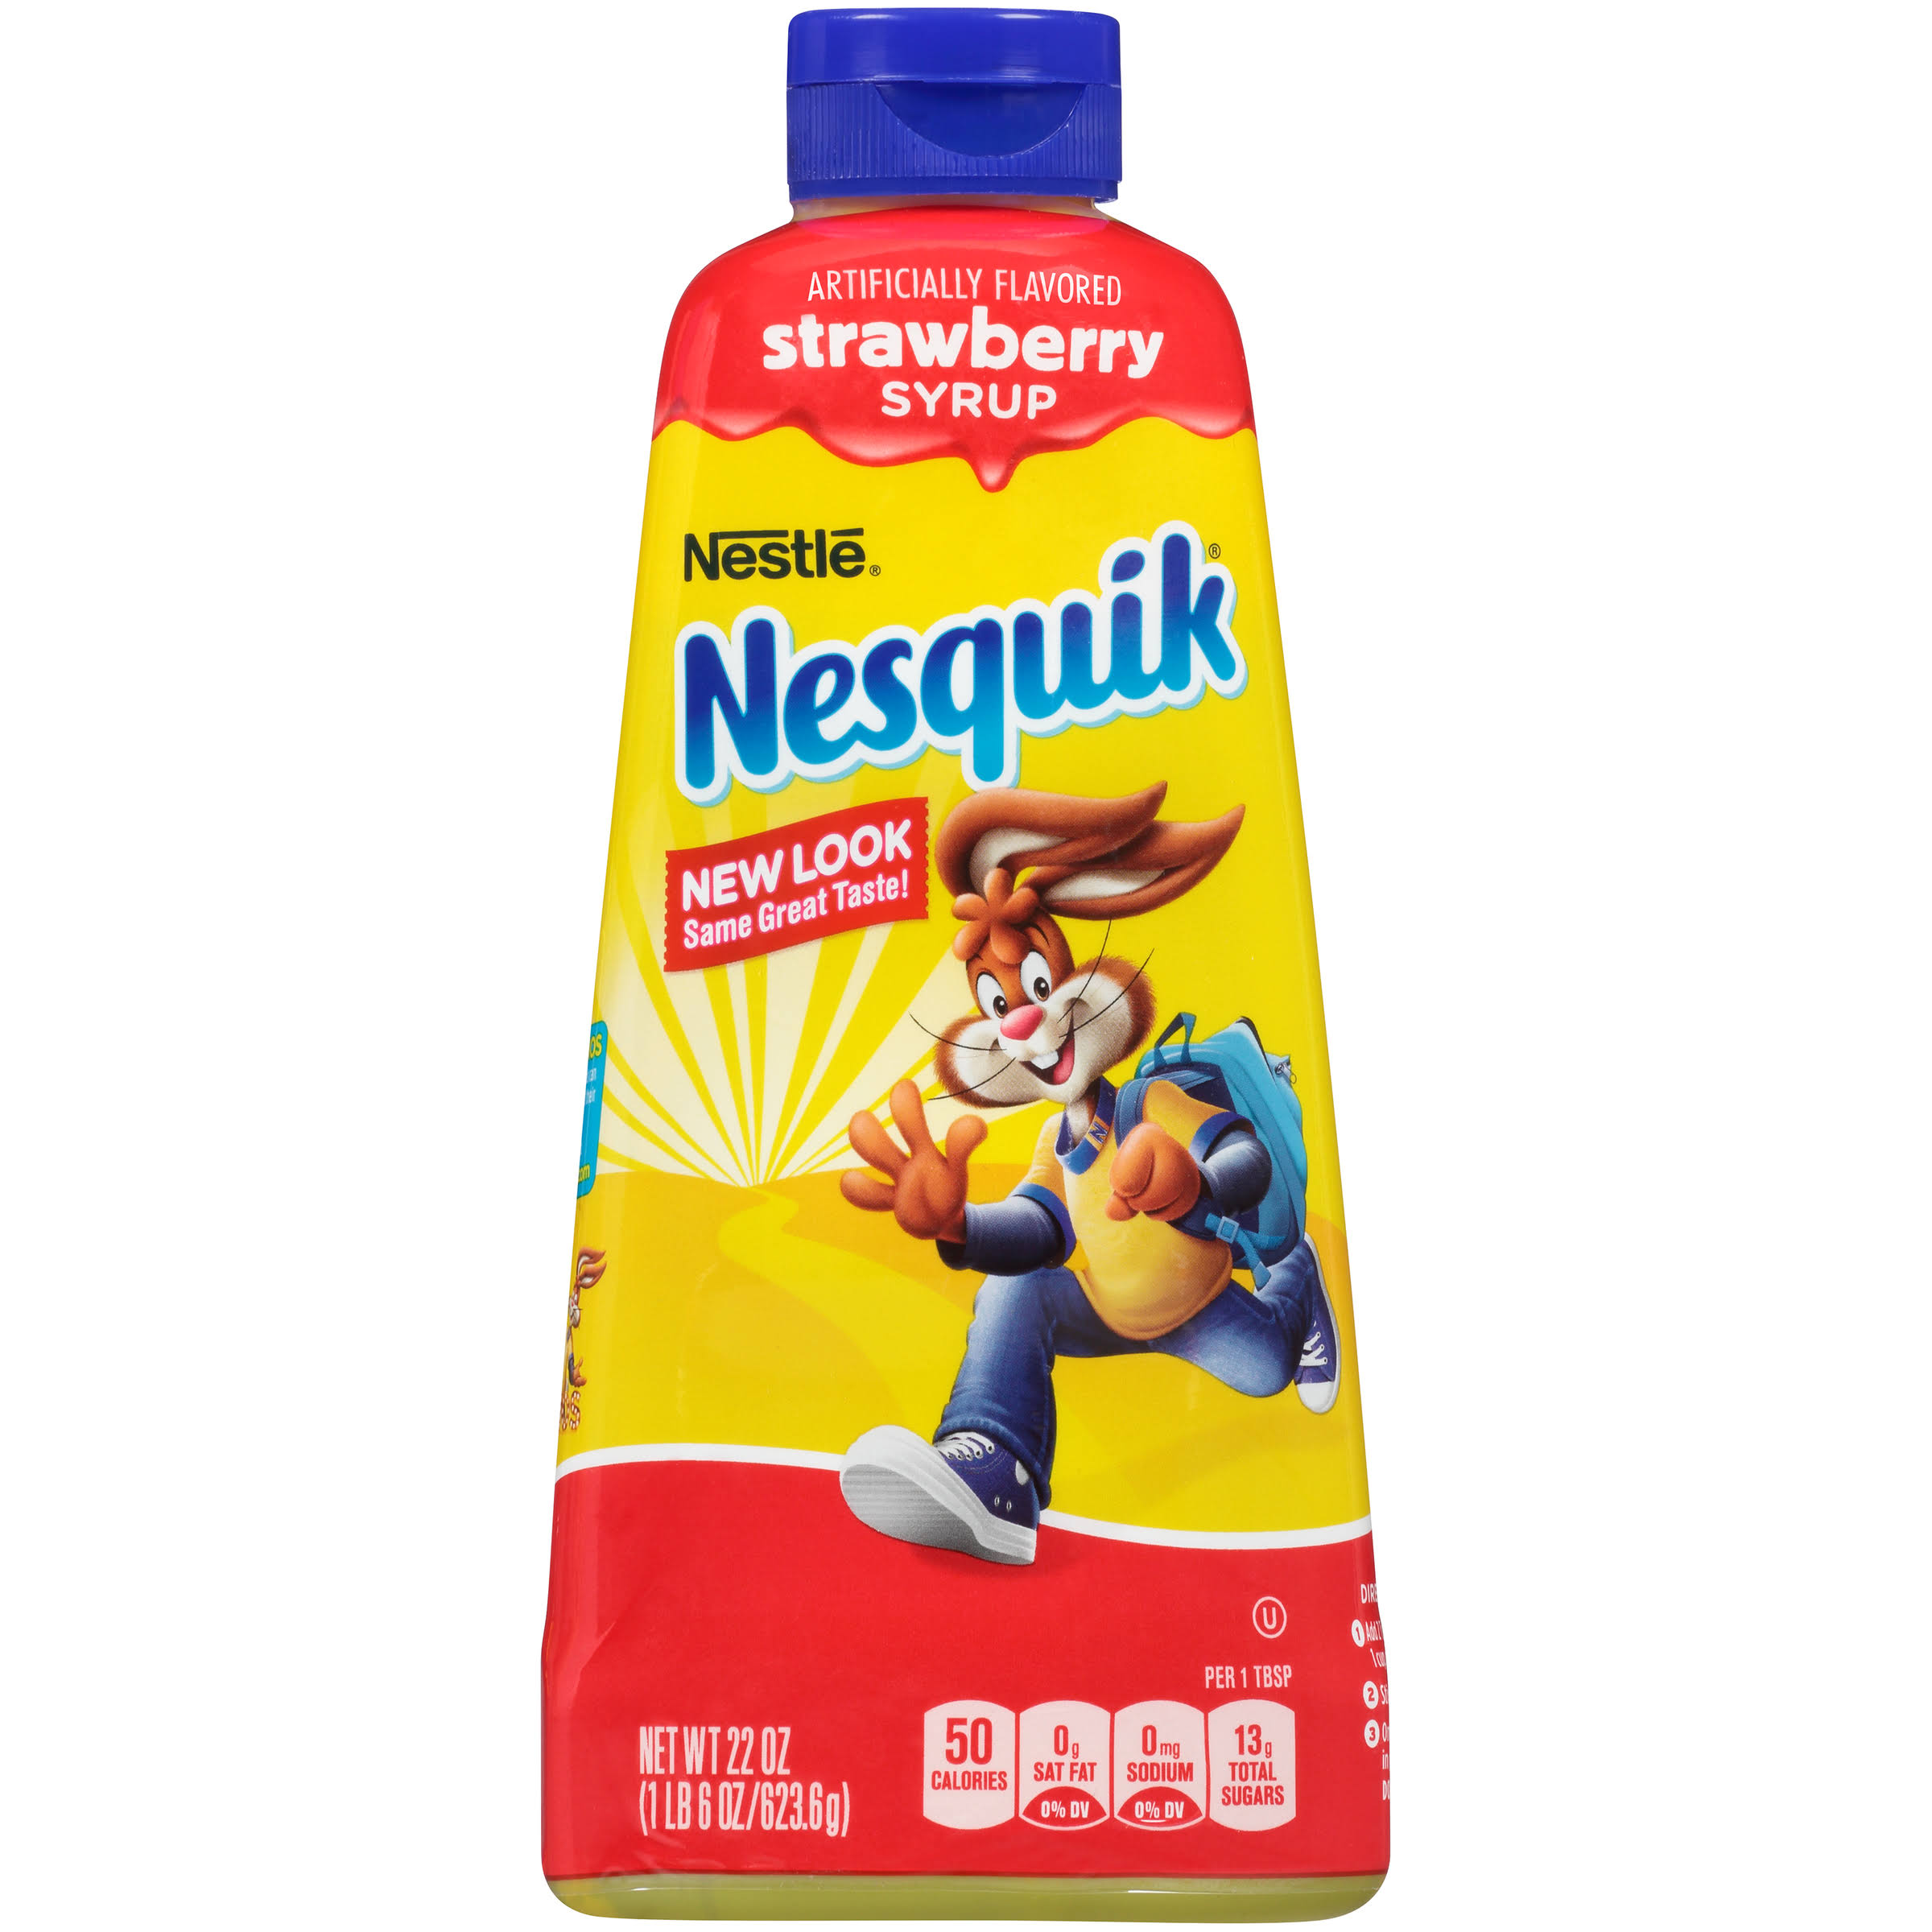 Nestlé Nesquik - Strawberry Syrup, 22 oz